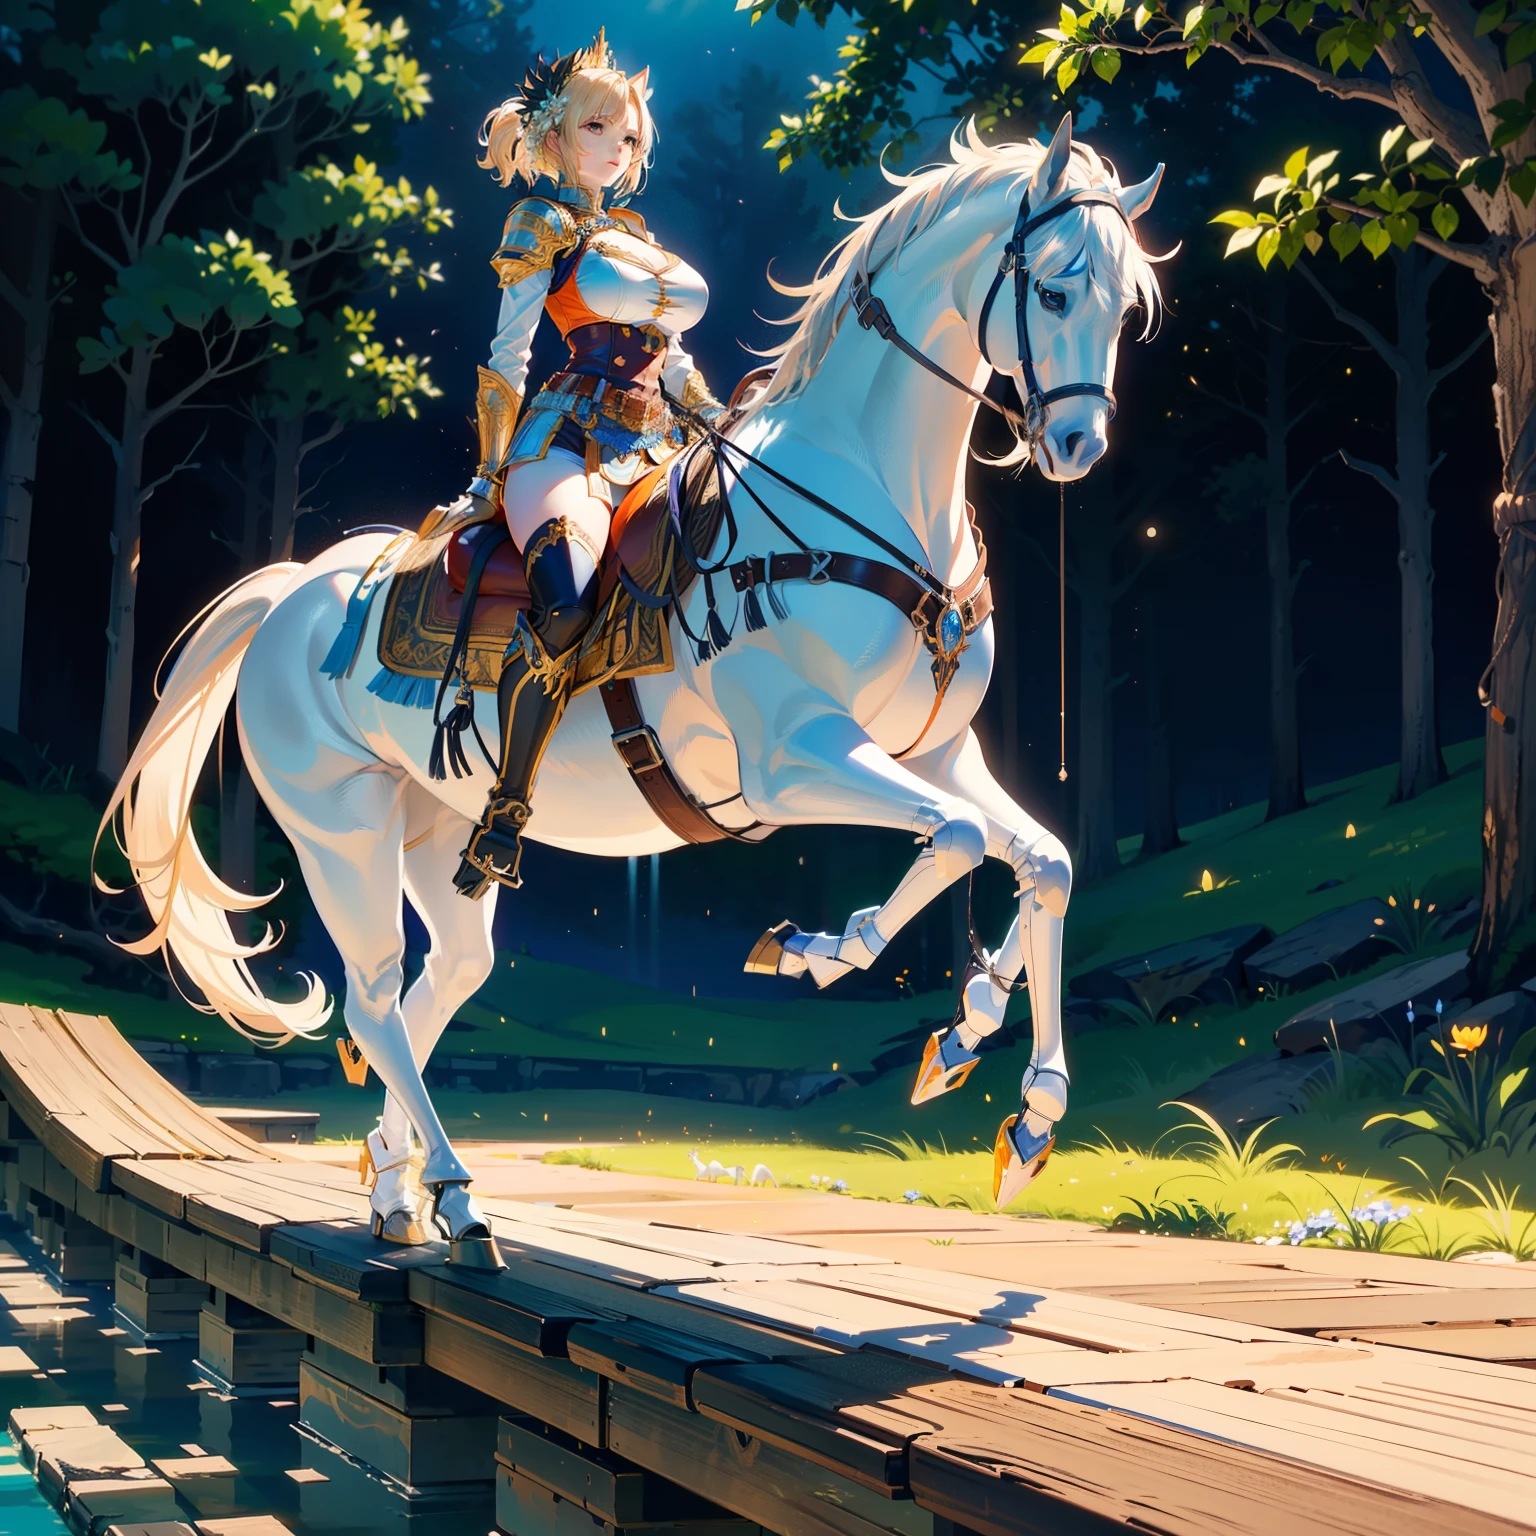 ((最好的品質)), ((動漫傑作)), (詳細的), 電影燈光, 色彩鮮豔, 8K, 完美的臉, 大胸, a female knight riding a walking 白馬 in the woods+, (藍甲, 橘色短褲, 皮靴), (白馬, 鞍, 馬鐙, 韁繩: 1.5)++, 森林, 風景, 從側面: 1.5, 解剖學正確,